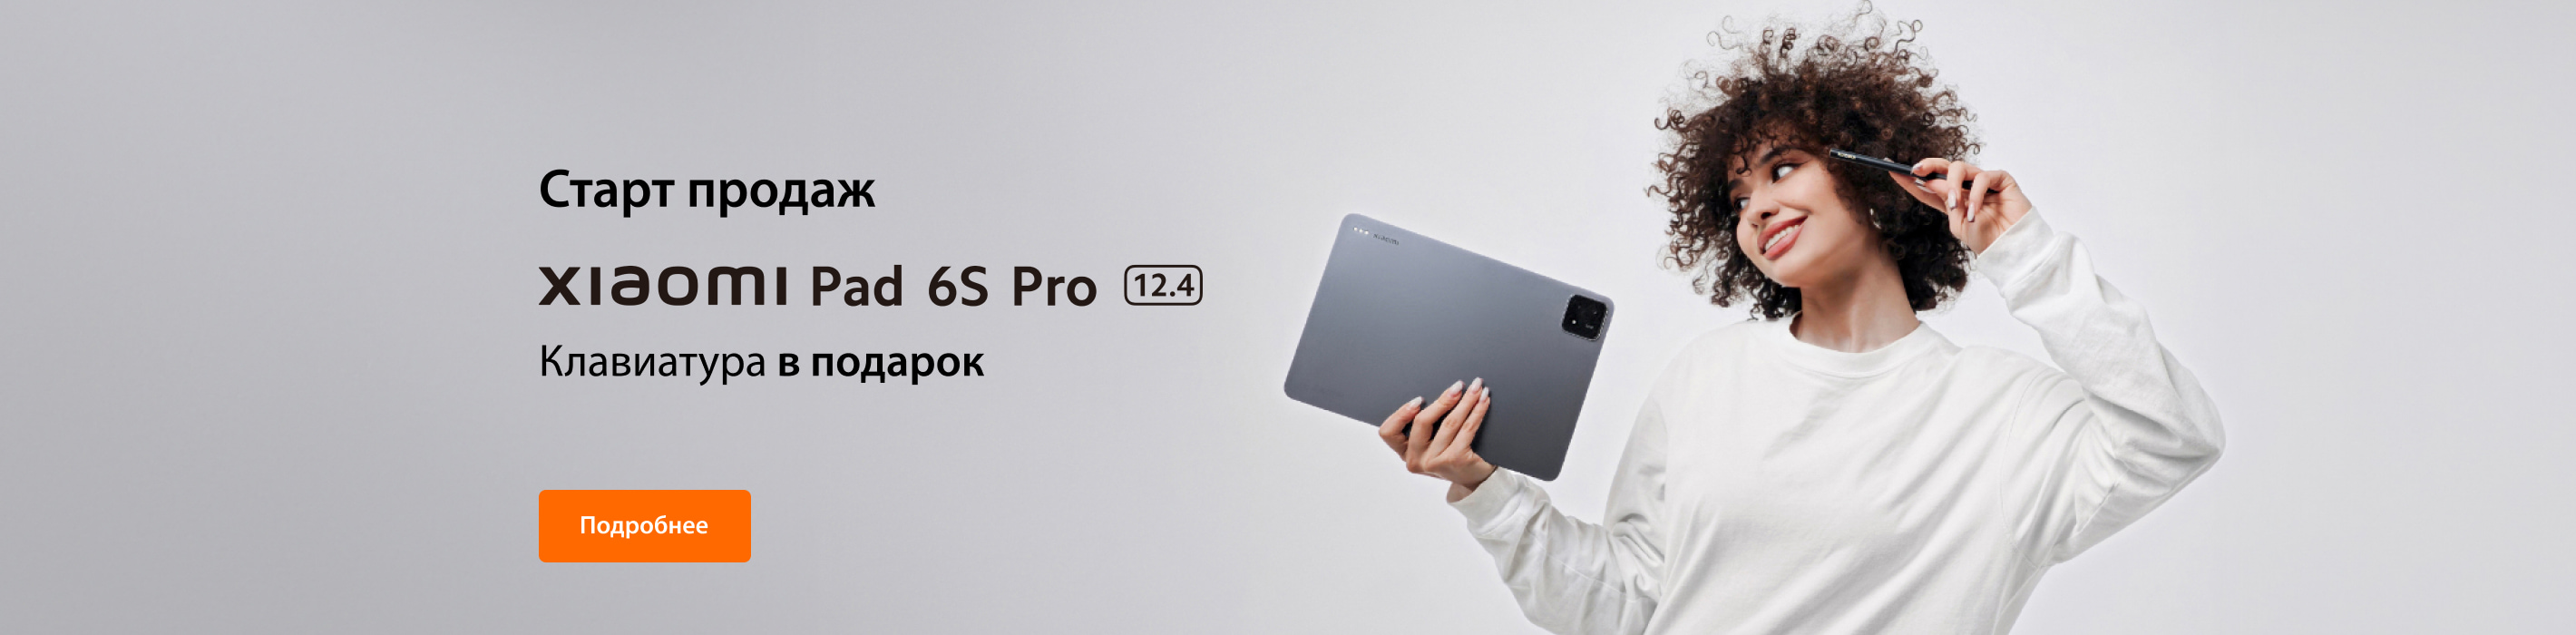 Старт продаж Xiaomi Pro Pad 6S Pro